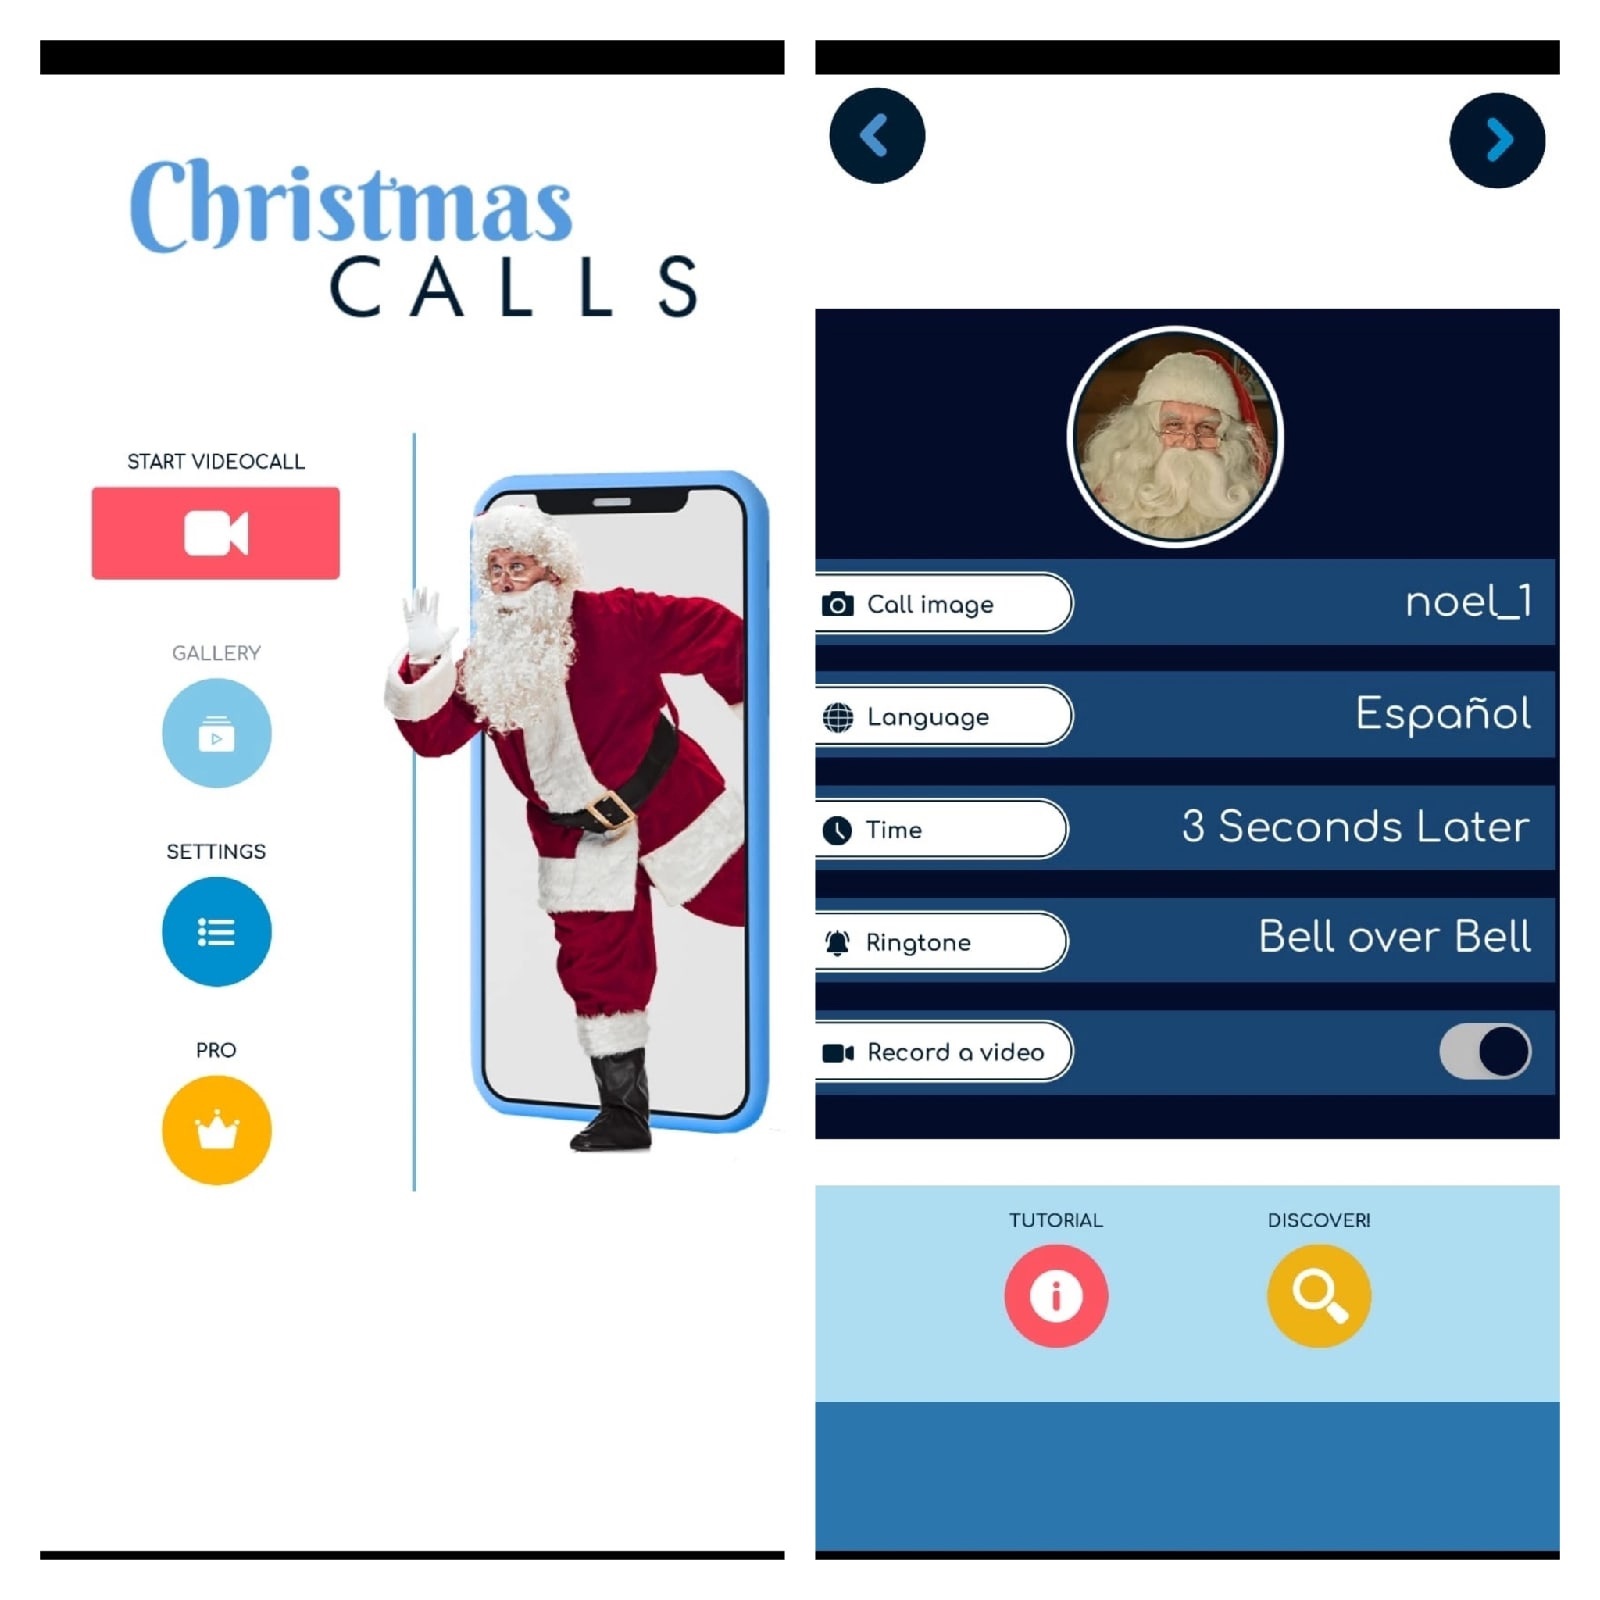 Speak to Santa Claus - Message1